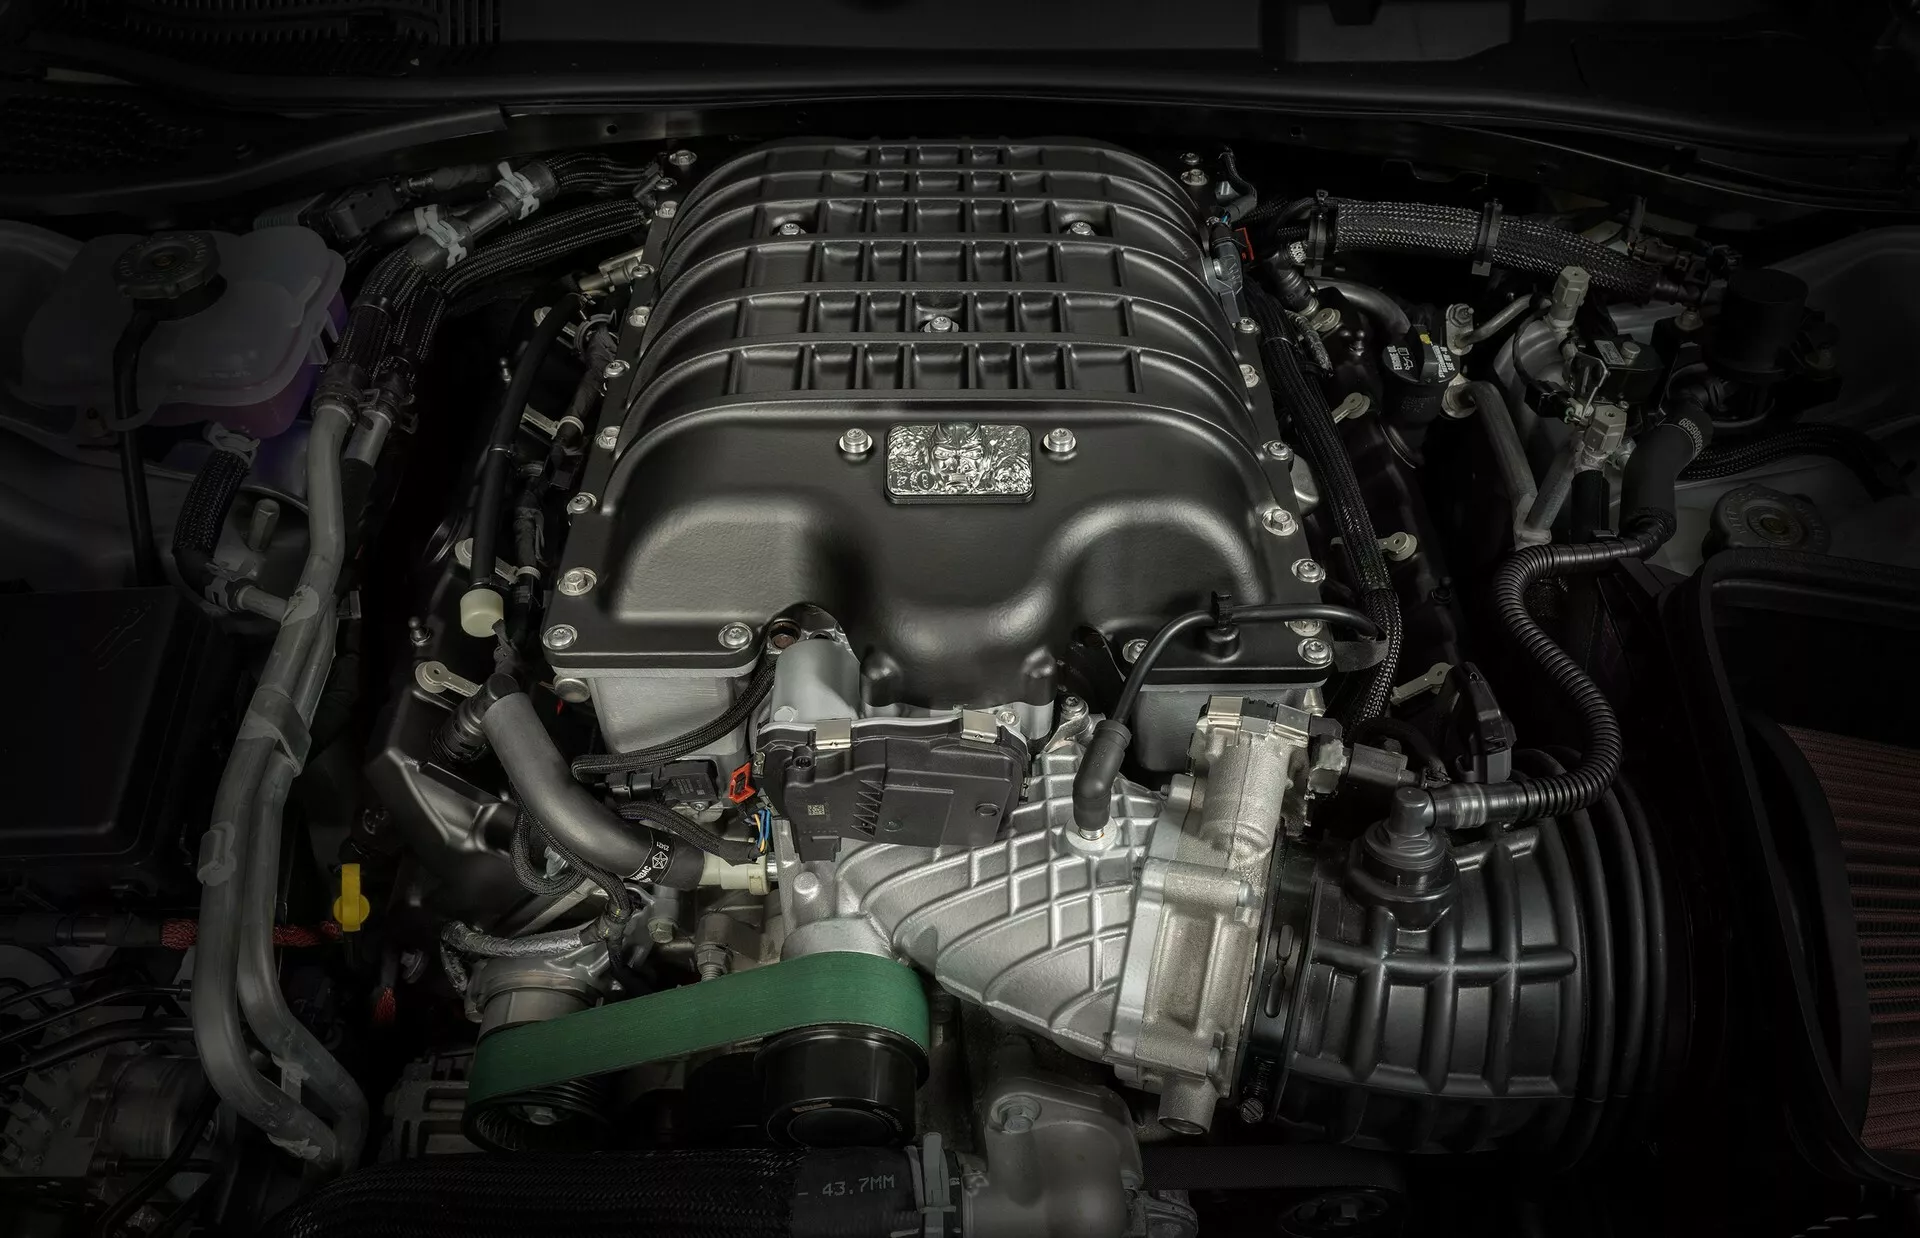 دودج تطرح محرك تشالنجر SRT ديمون 170 الأقوى في تاريخ الموديل للبيع بشكل مستقل 1